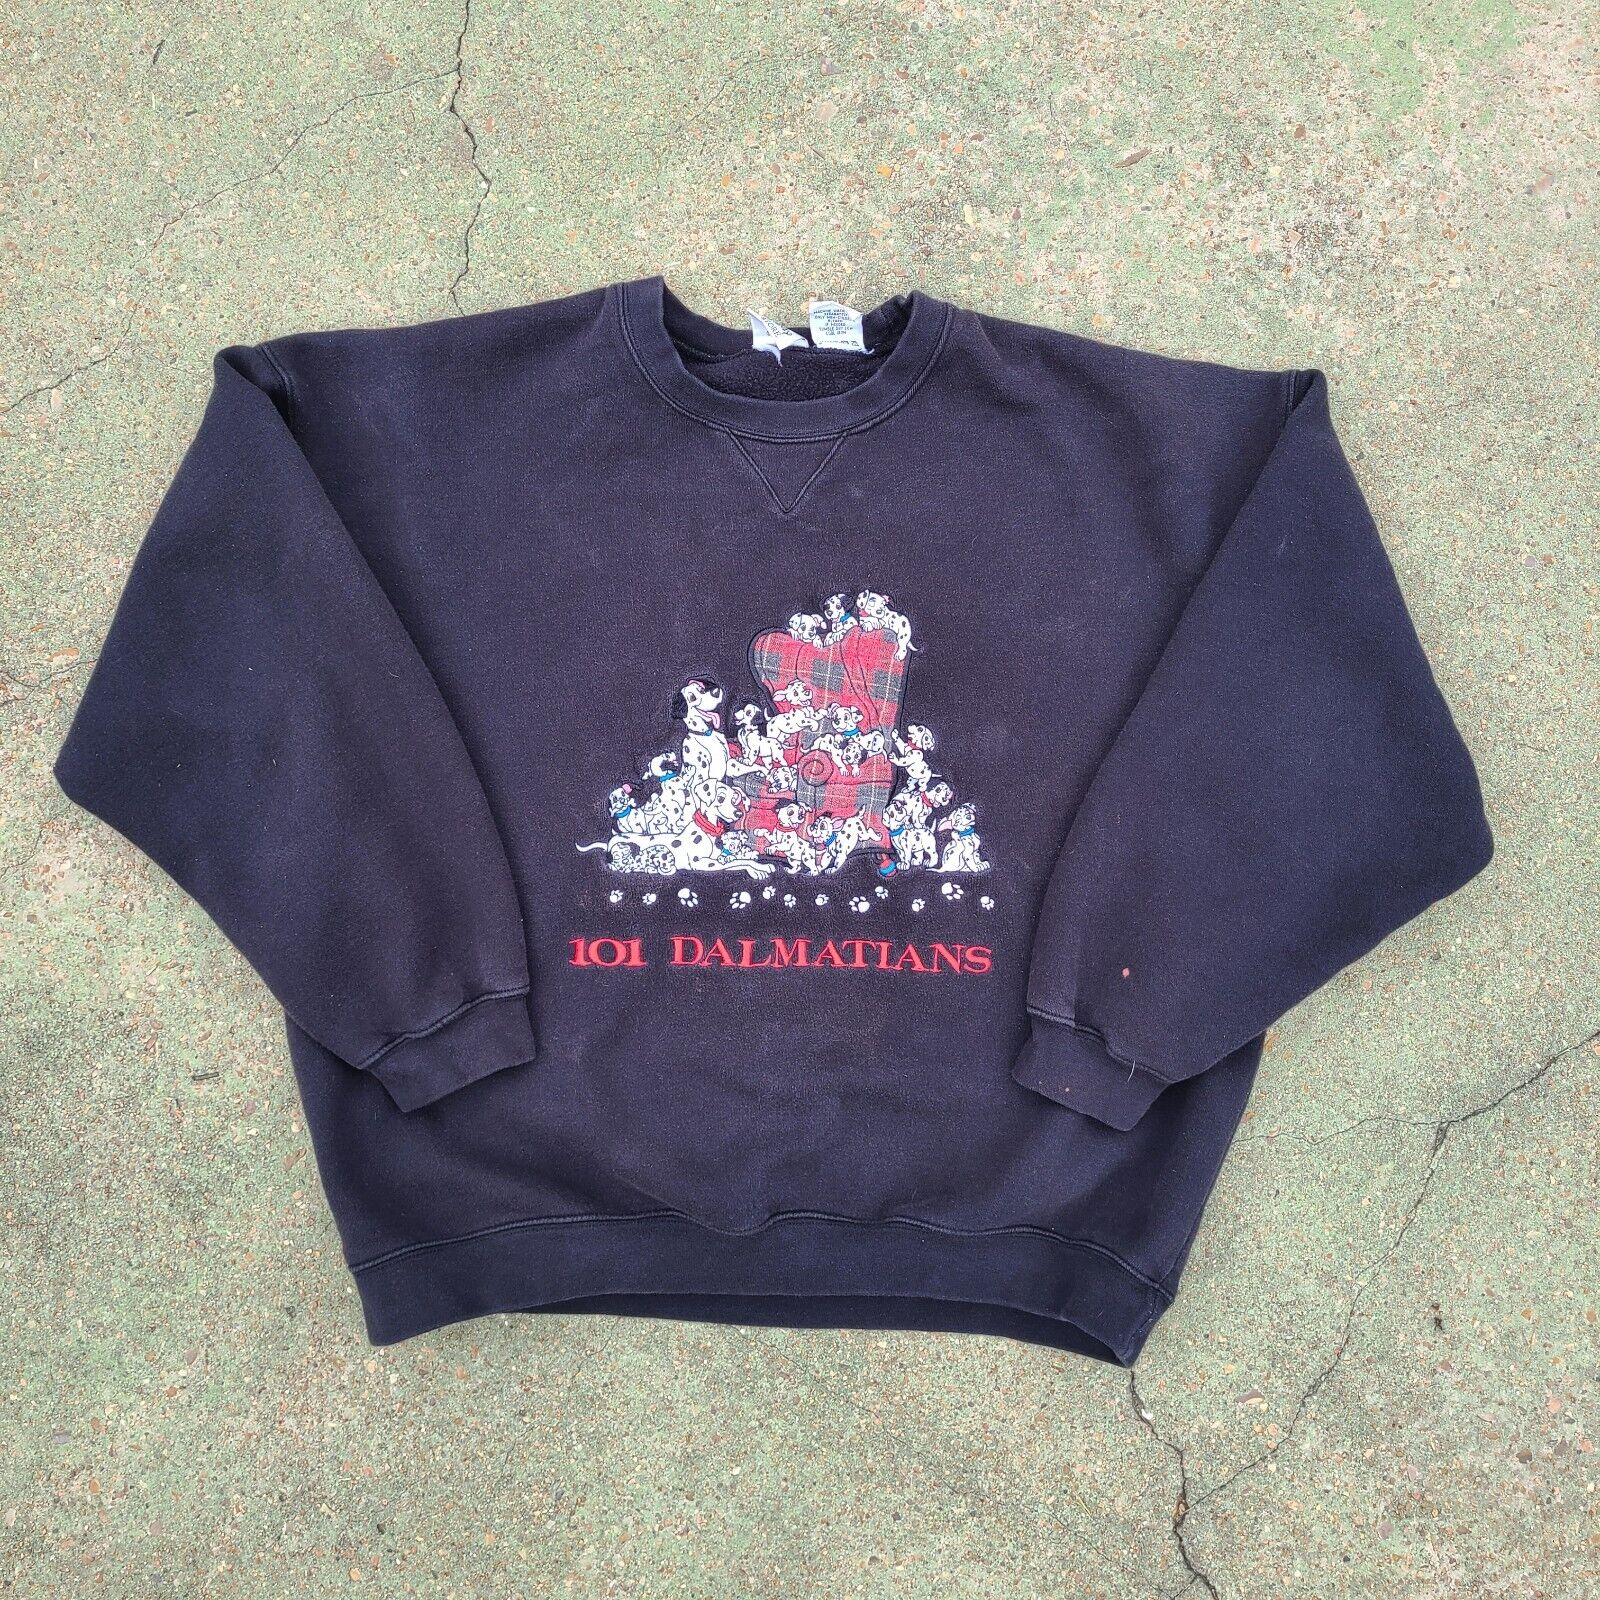 Vintage Disney Store 101 Dalmatians Sweater XL Has Paint Stains